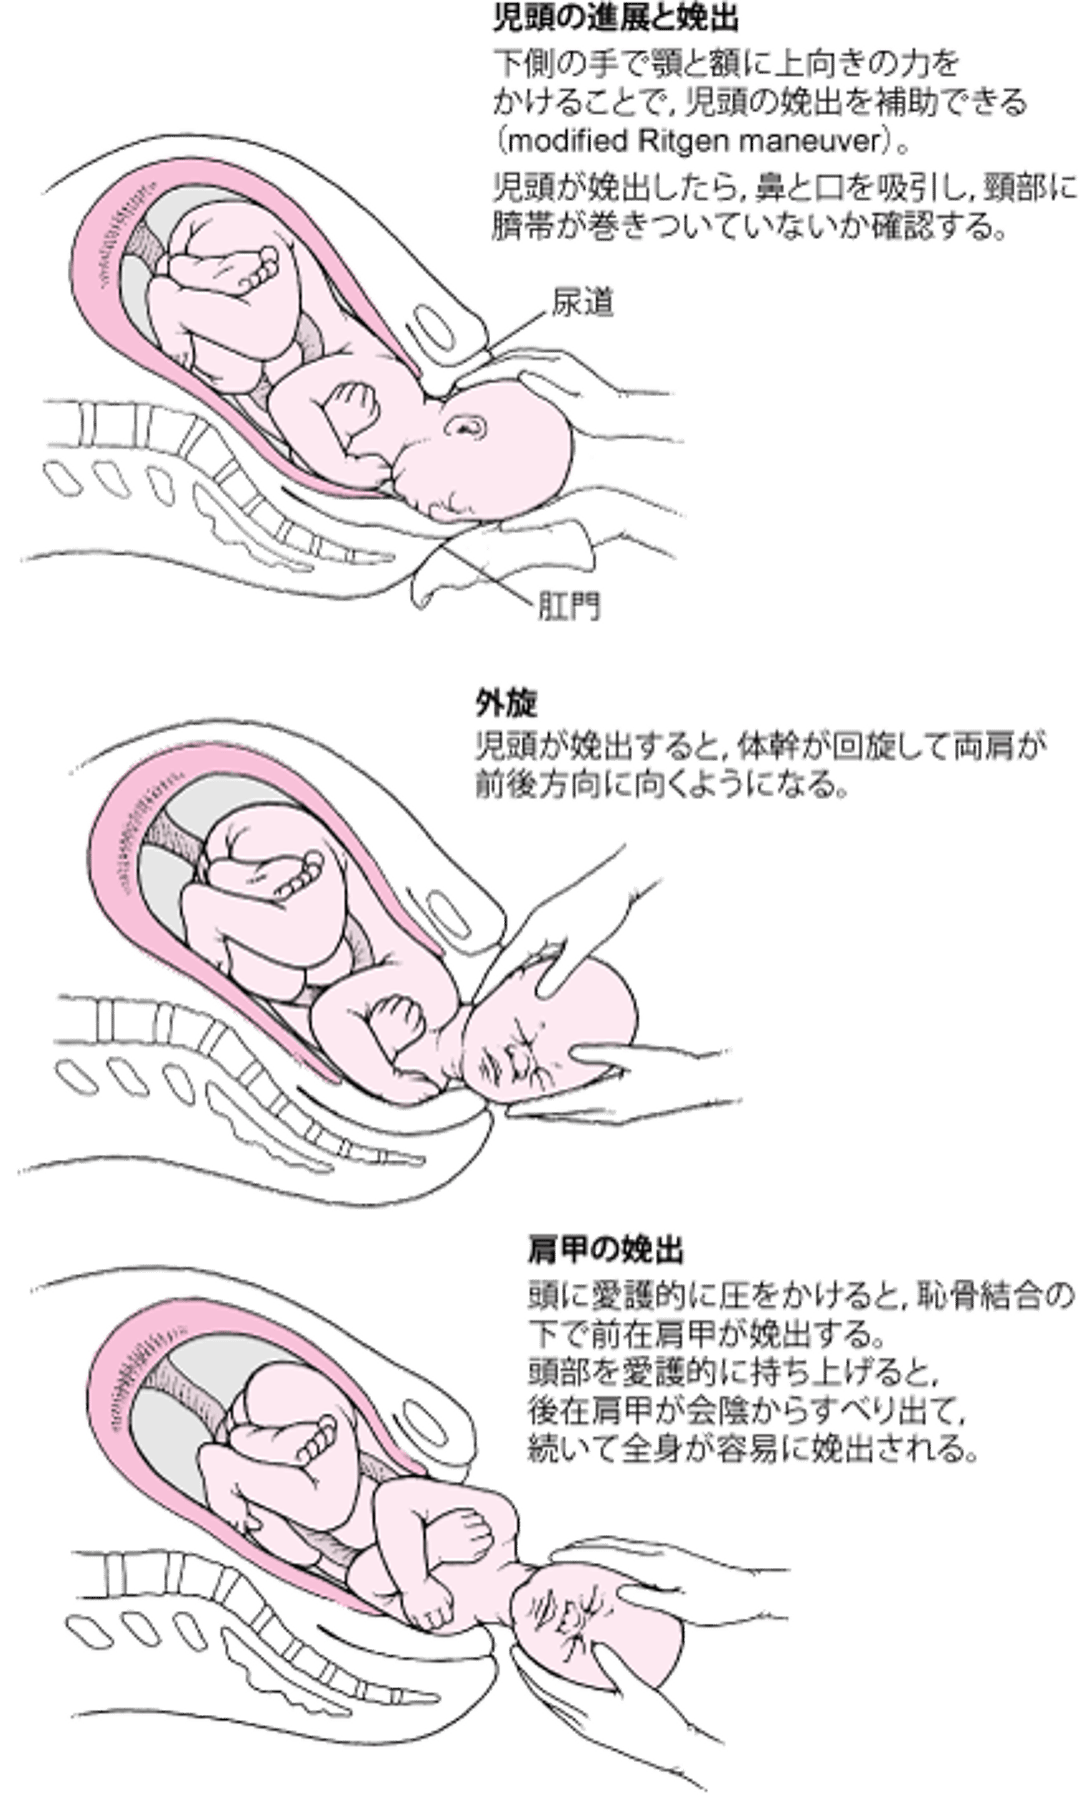 頭位分娩の一連の流れ